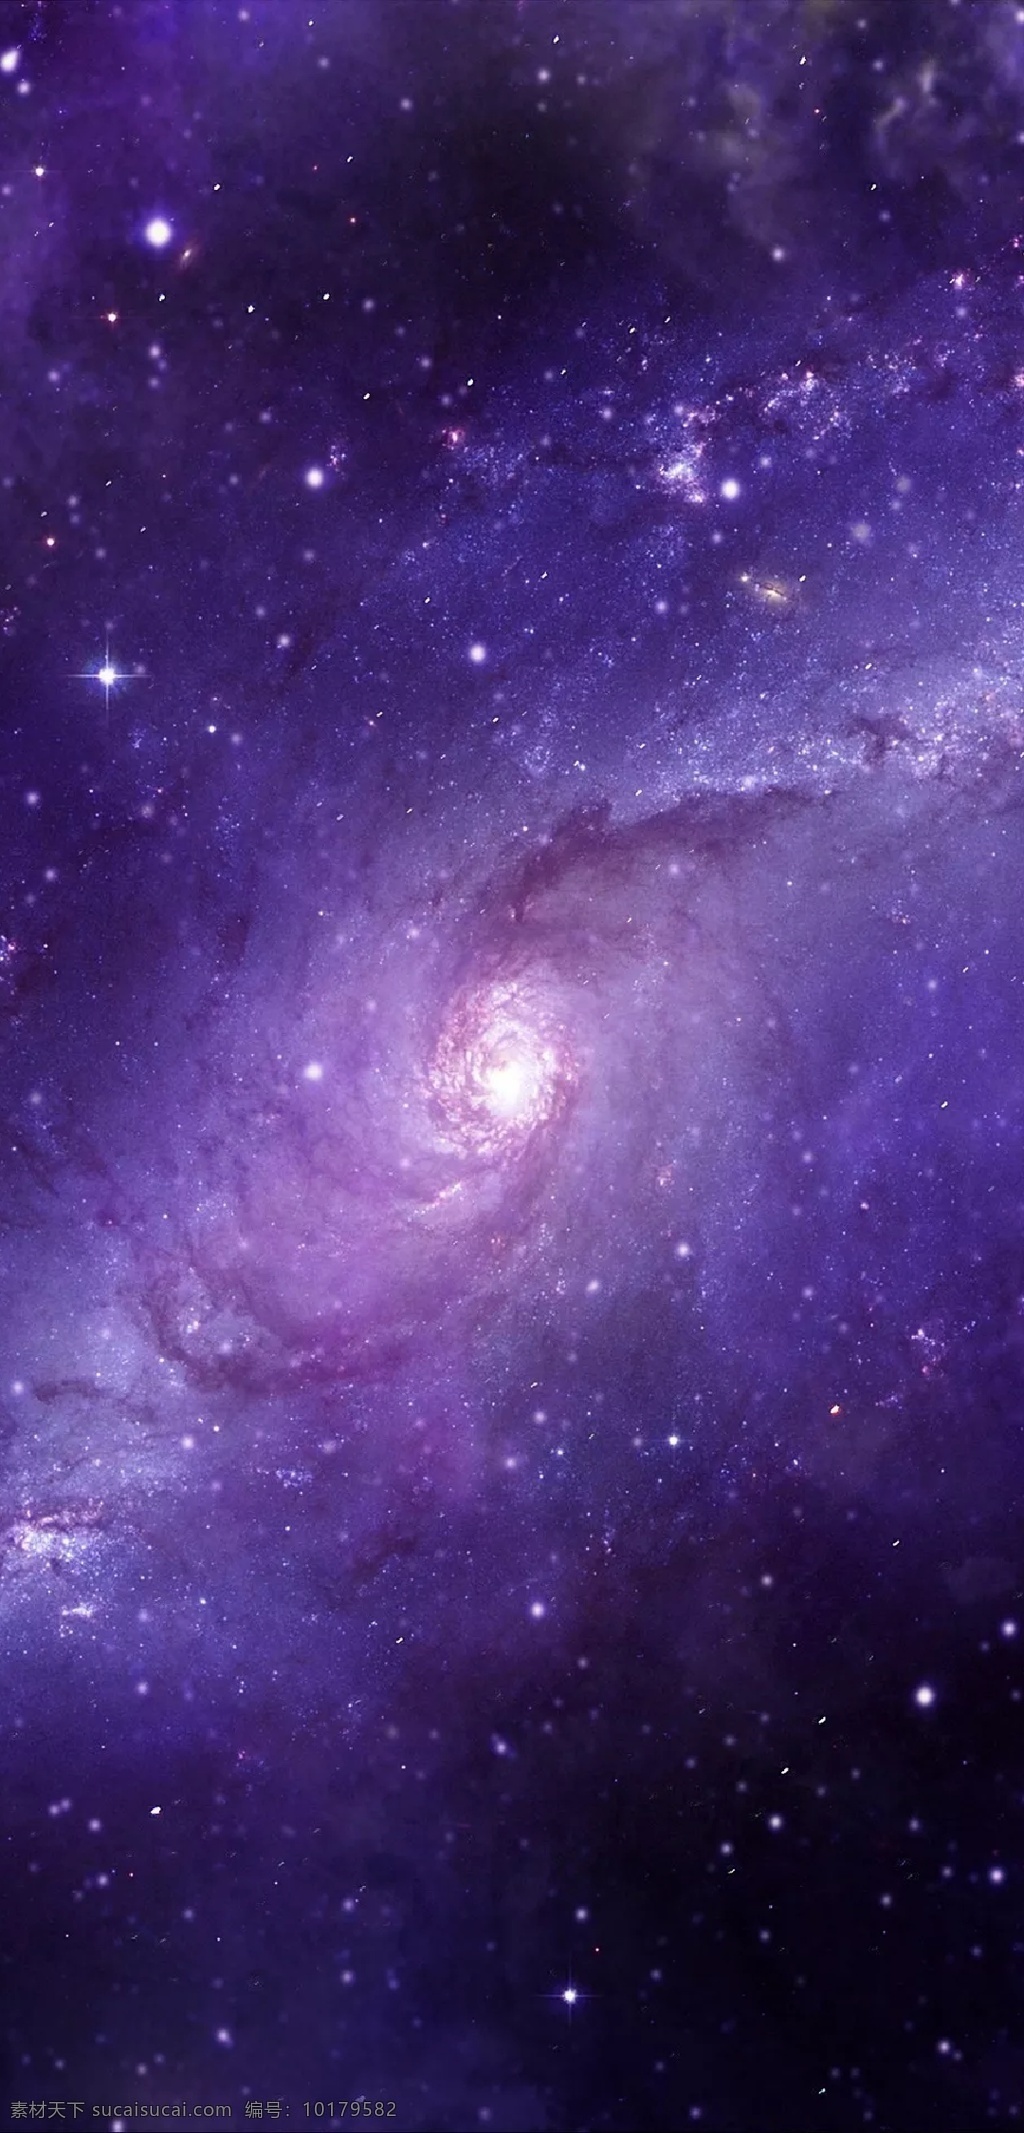 紫雾银河 手机高清桌布 星空 宇宙 星星 银河 星系 星河 星云 亮体 亮光 本星系群 天文 宇宙星系 浩瀚 星团 滤光 云雾 天体 星体 星 光圈 光环 紫雾 手机 高清 桌布